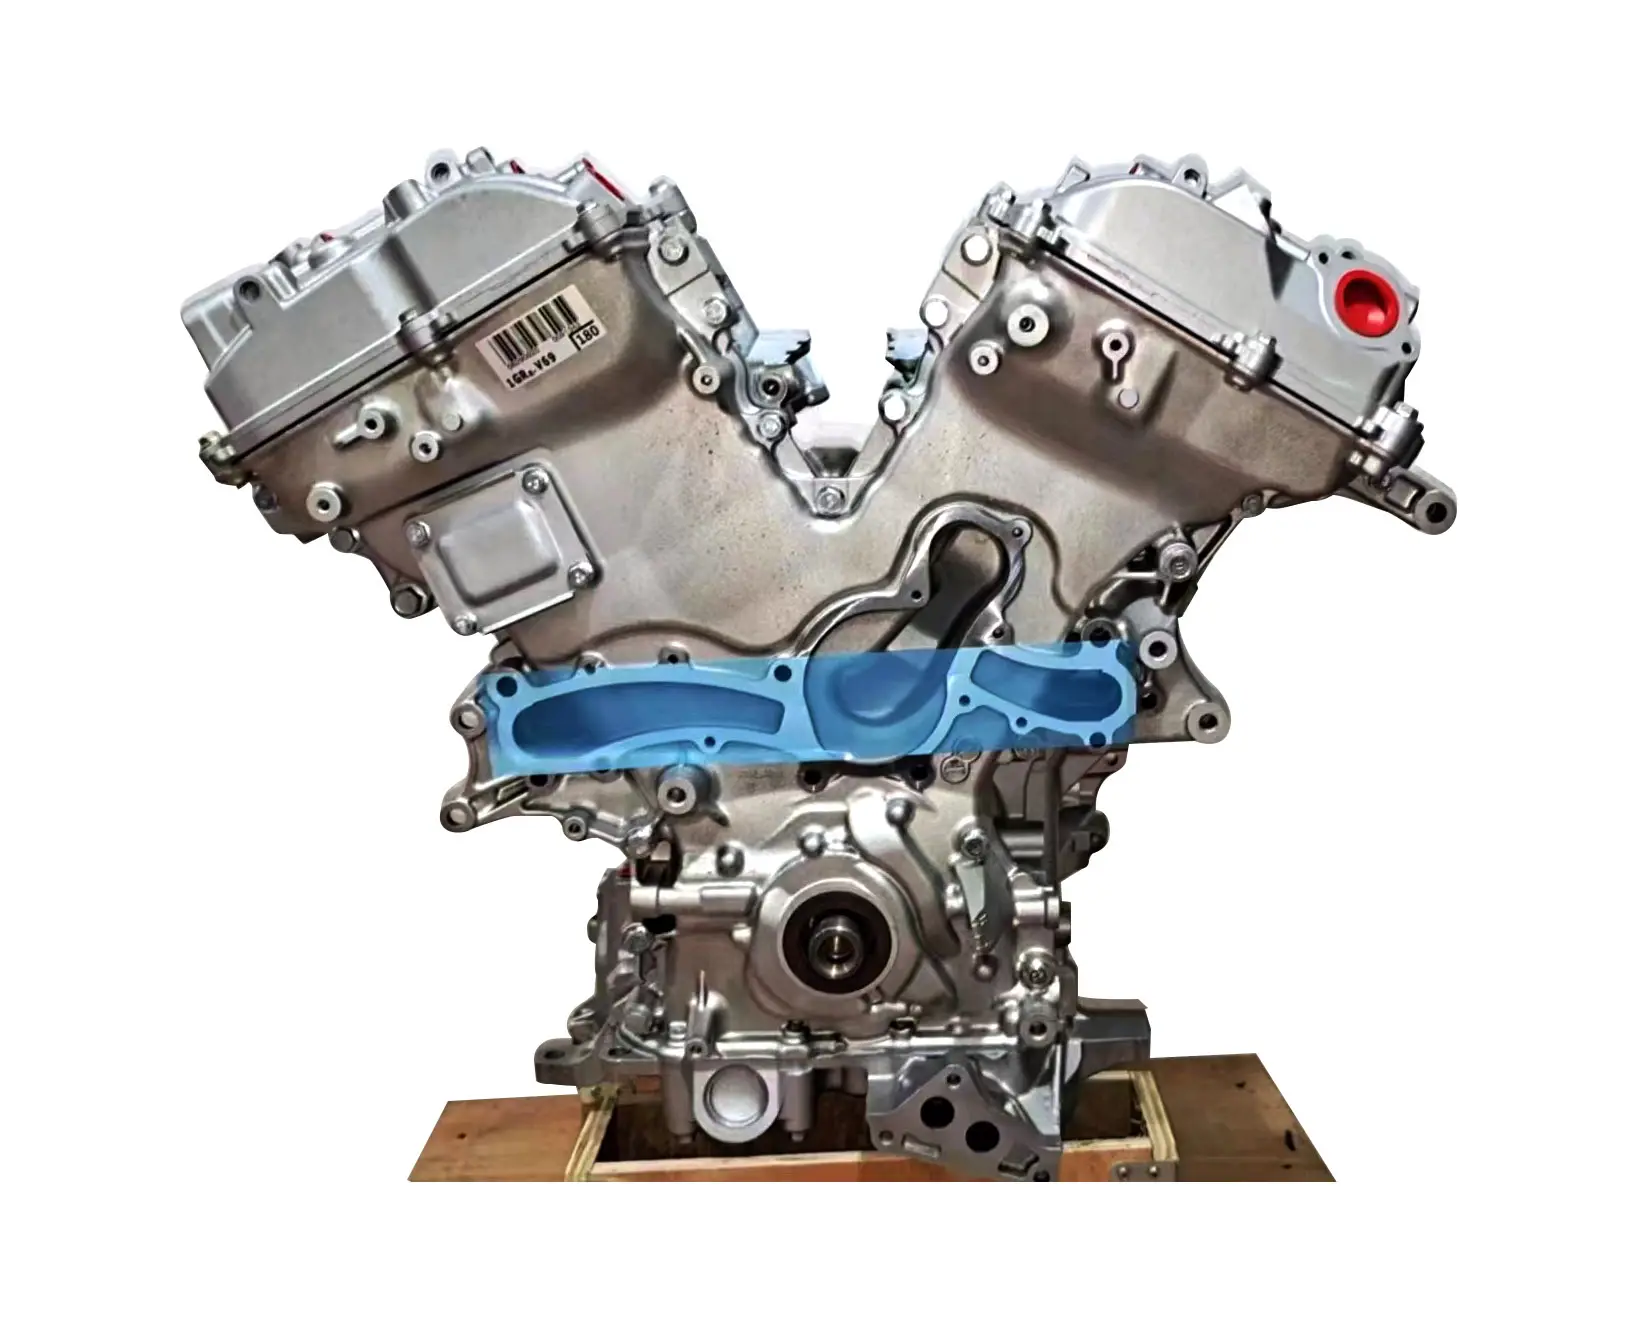 Фирменная Новинка 4 цилиндра двигателя в сборе 1gr для Toyota Prado J15 landcool luzer landcruze 4.0L